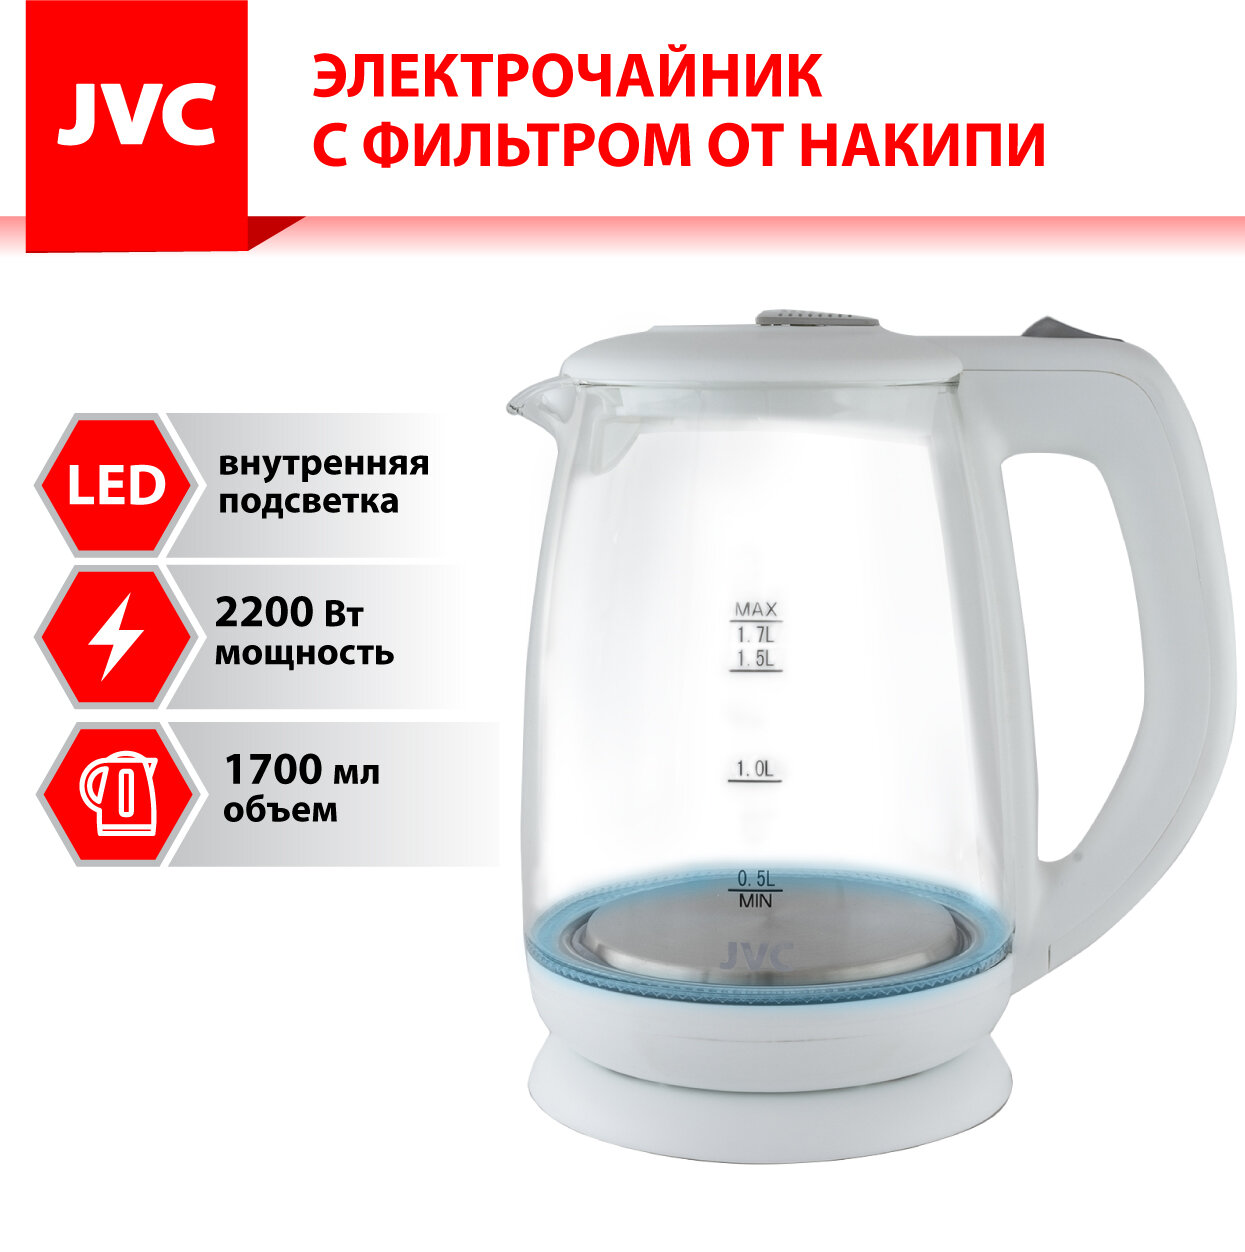 Чайник электрический стеклянный JVC 1,7 л, LED подсветка, фильтр от накипи, автоотключение, 2200 Вт